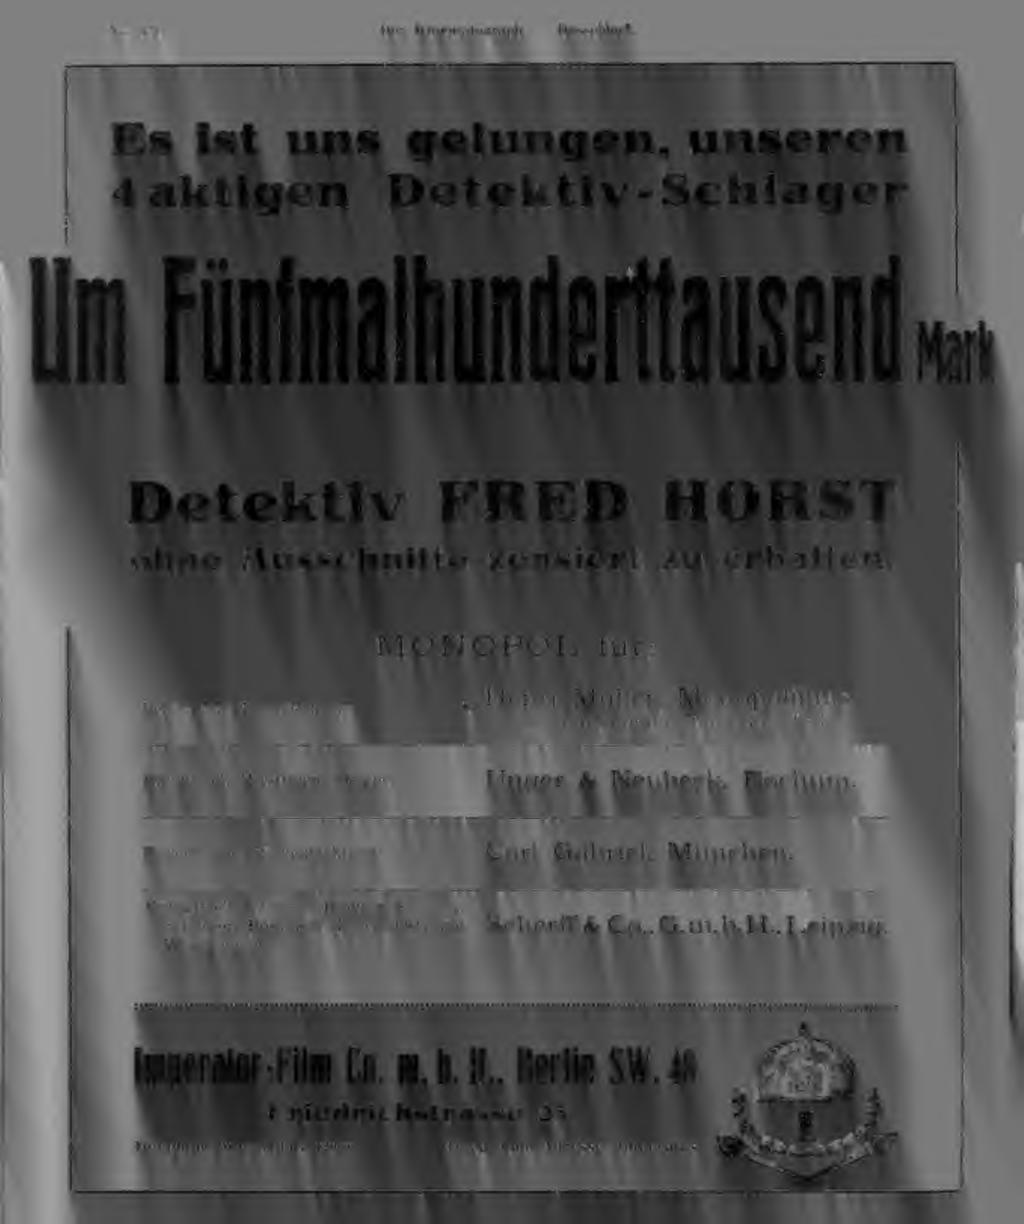 MONOPOL für: Berlin und Brandenburg: s Henri Müller, Monopolfilms G. m. b. H., Friedrichstrasse 236, Berlin.